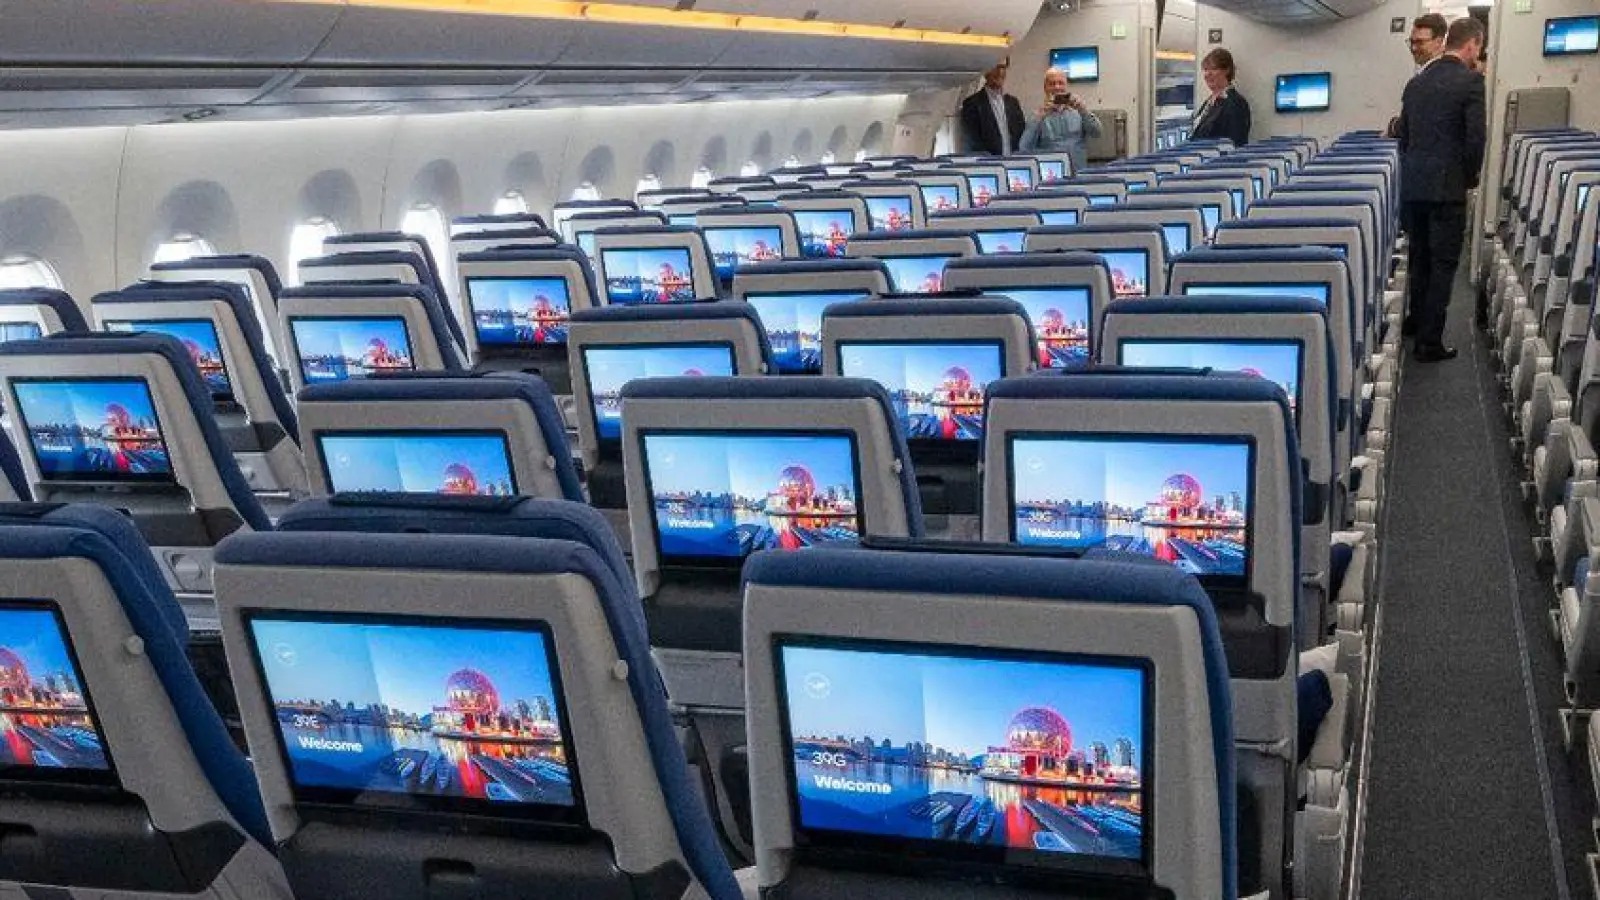 Sitze der Economy Class mit Bildschirmen während der Vorstellung von Lufthansa „Allegris“ in einem Airbus A350-900. Mit dem Kunstbegriff „Allegris“ ist ein neues Kabinenkonzept gemeint, das eine neue Bestuhlung für alle vier Reiseklassen der Langstreckenflugzeuge bedeutet soll. (Foto: Peter Kneffel/dpa)